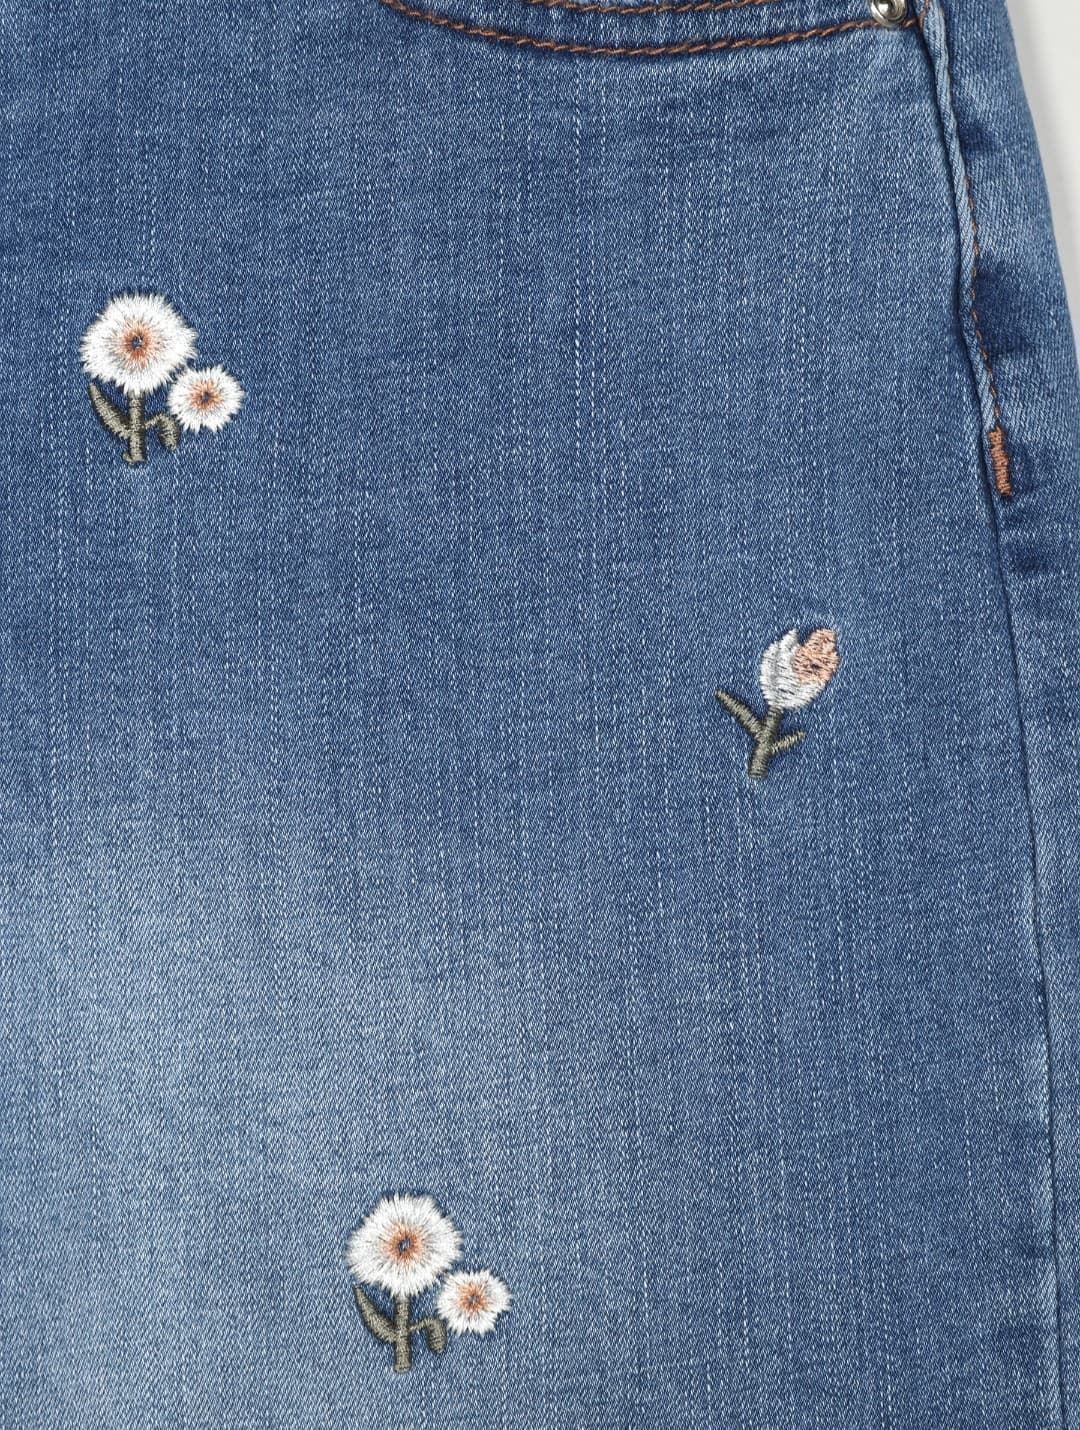 Jeans flowers - Imagen 2